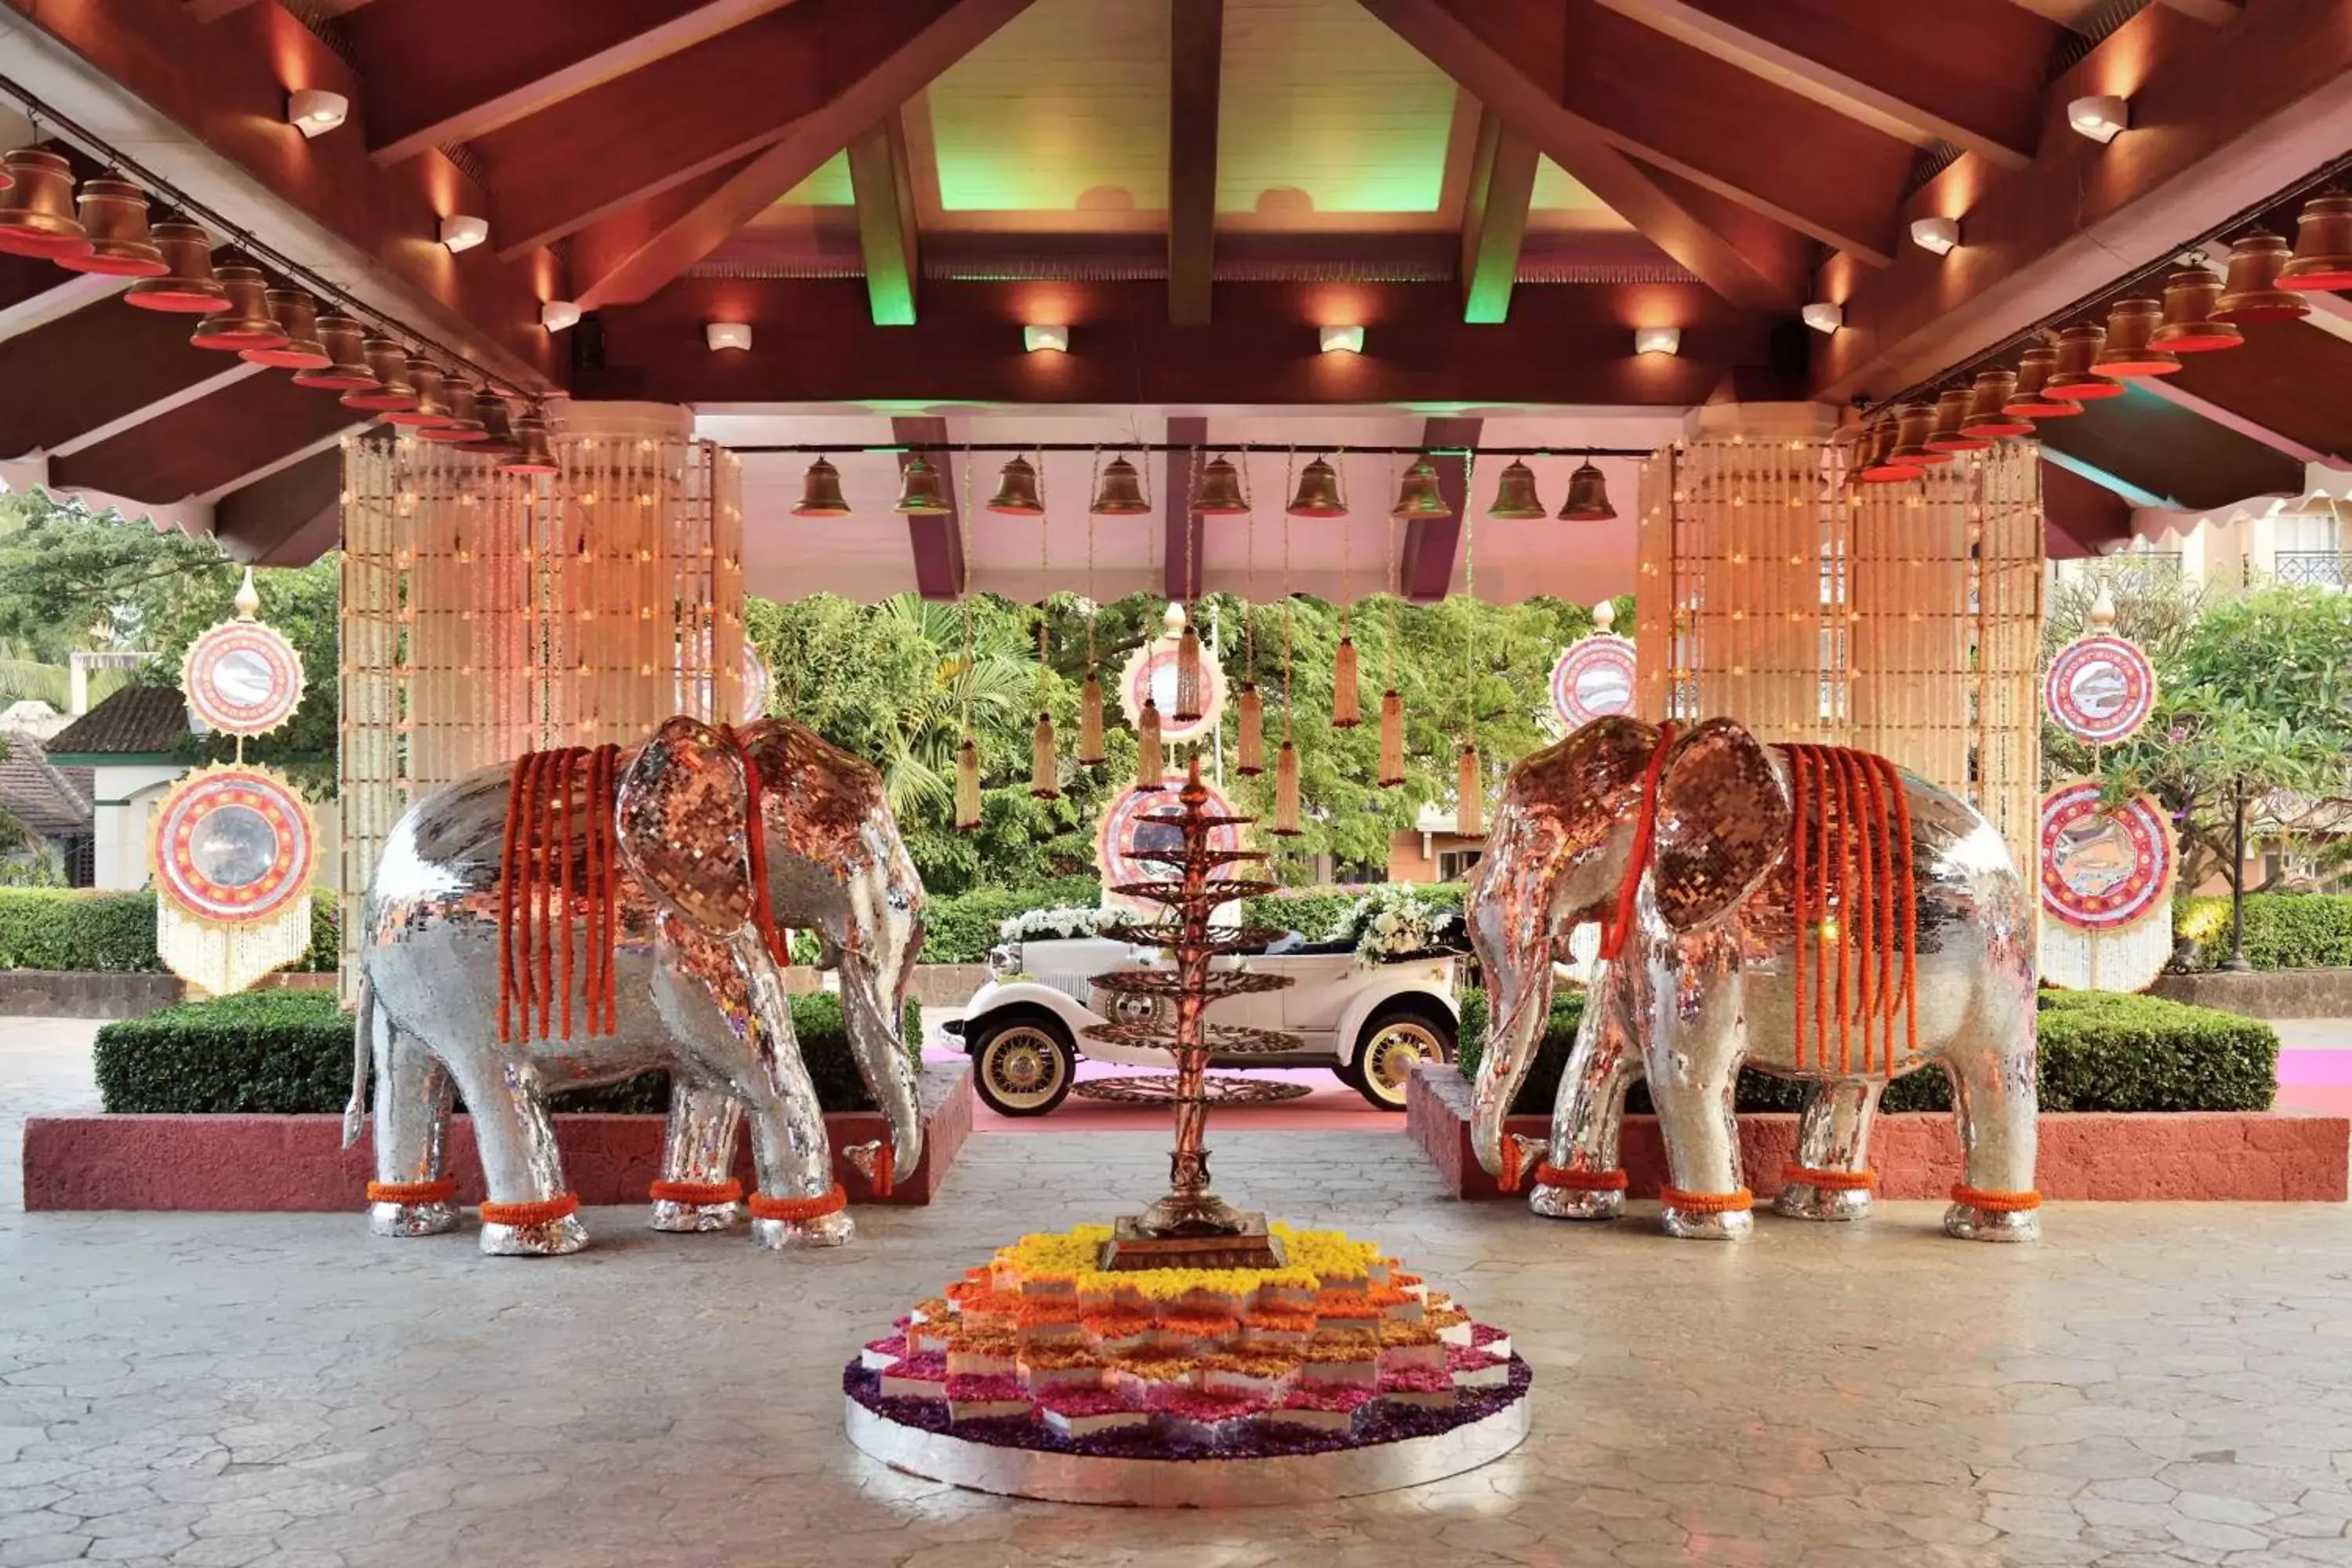 Banquet/Function facilities in Goa Marriott Resort & Spa